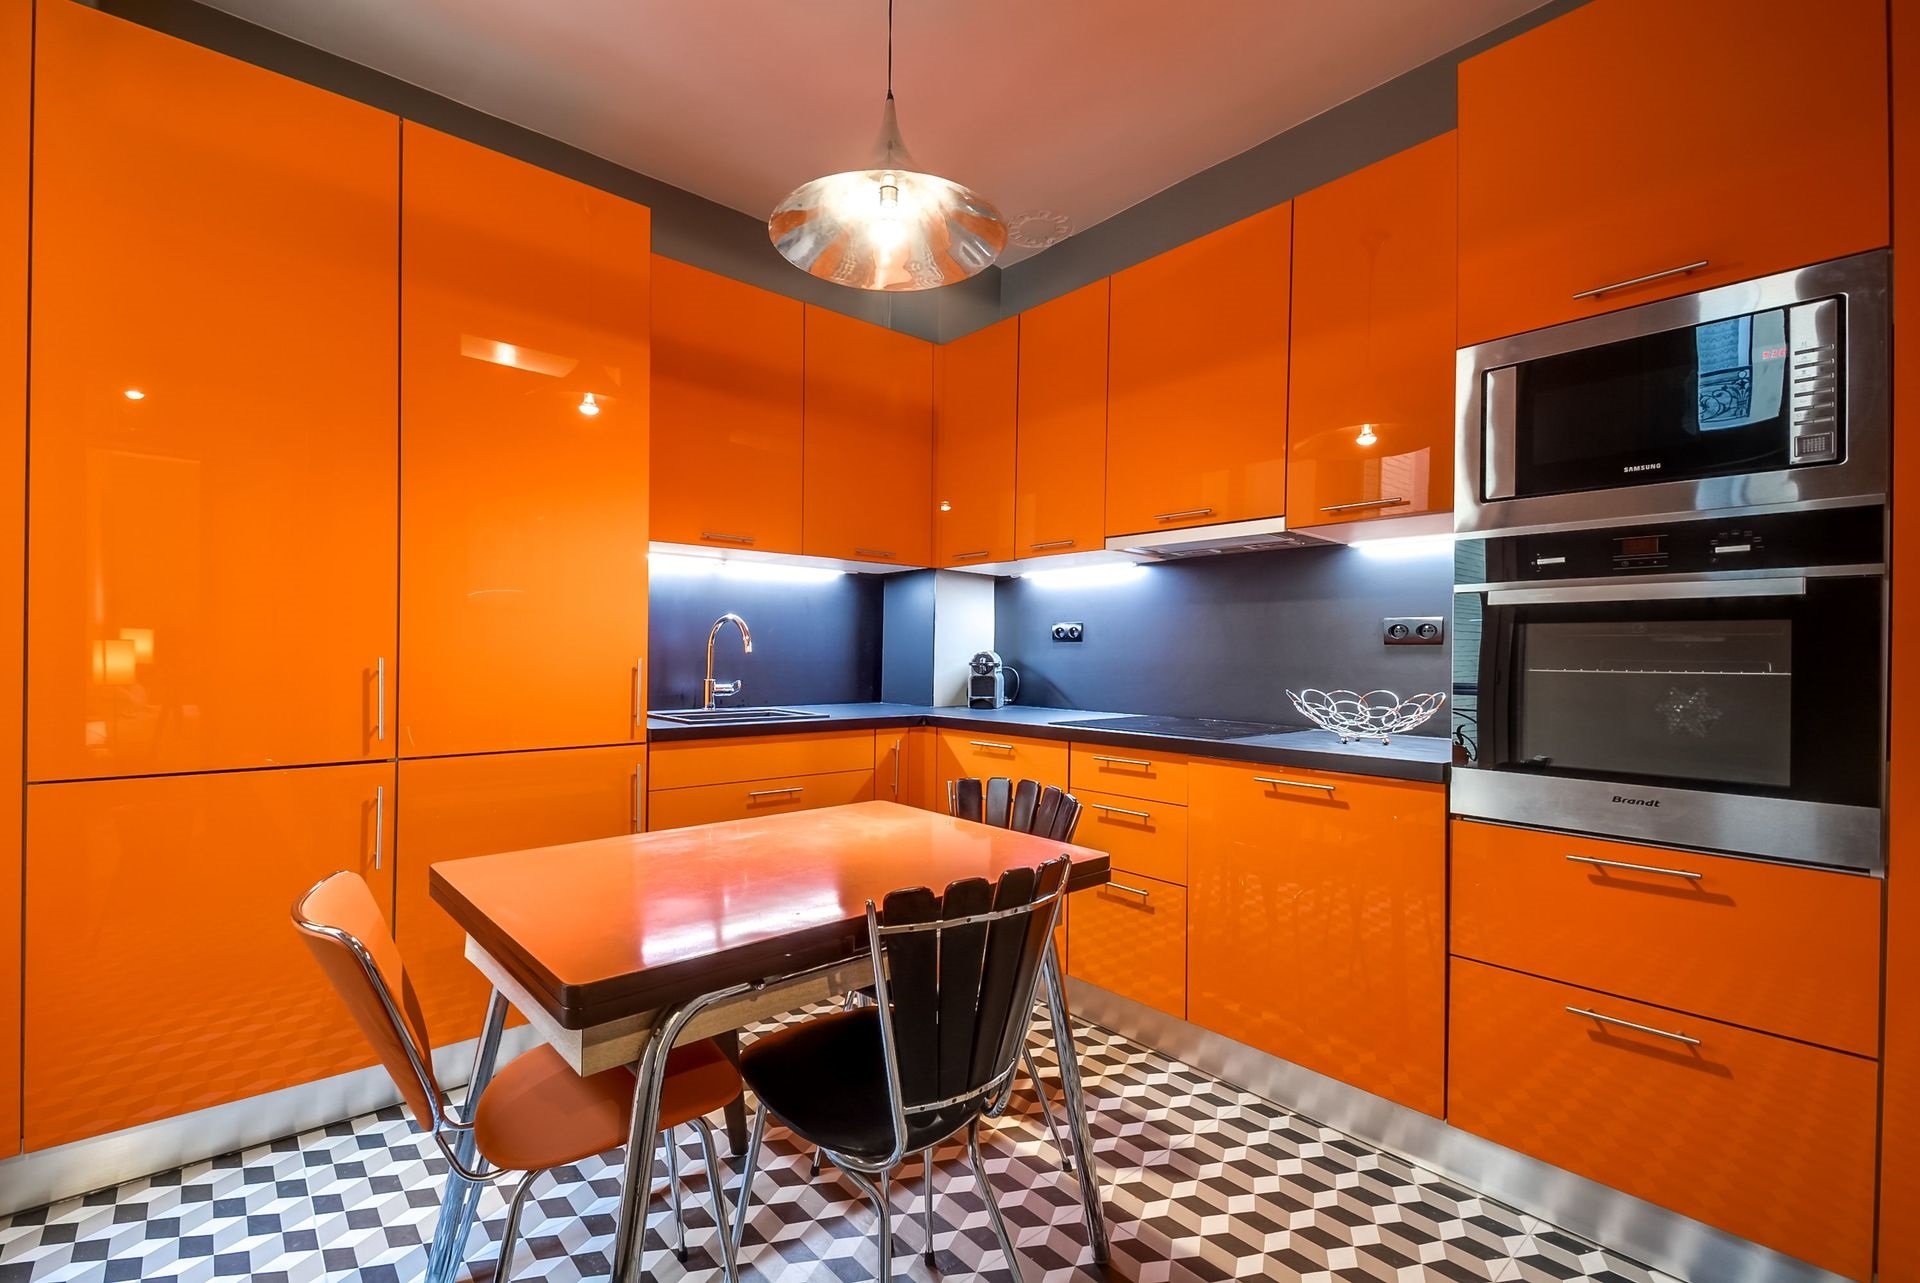 Проект кухни в оранжевом цвете